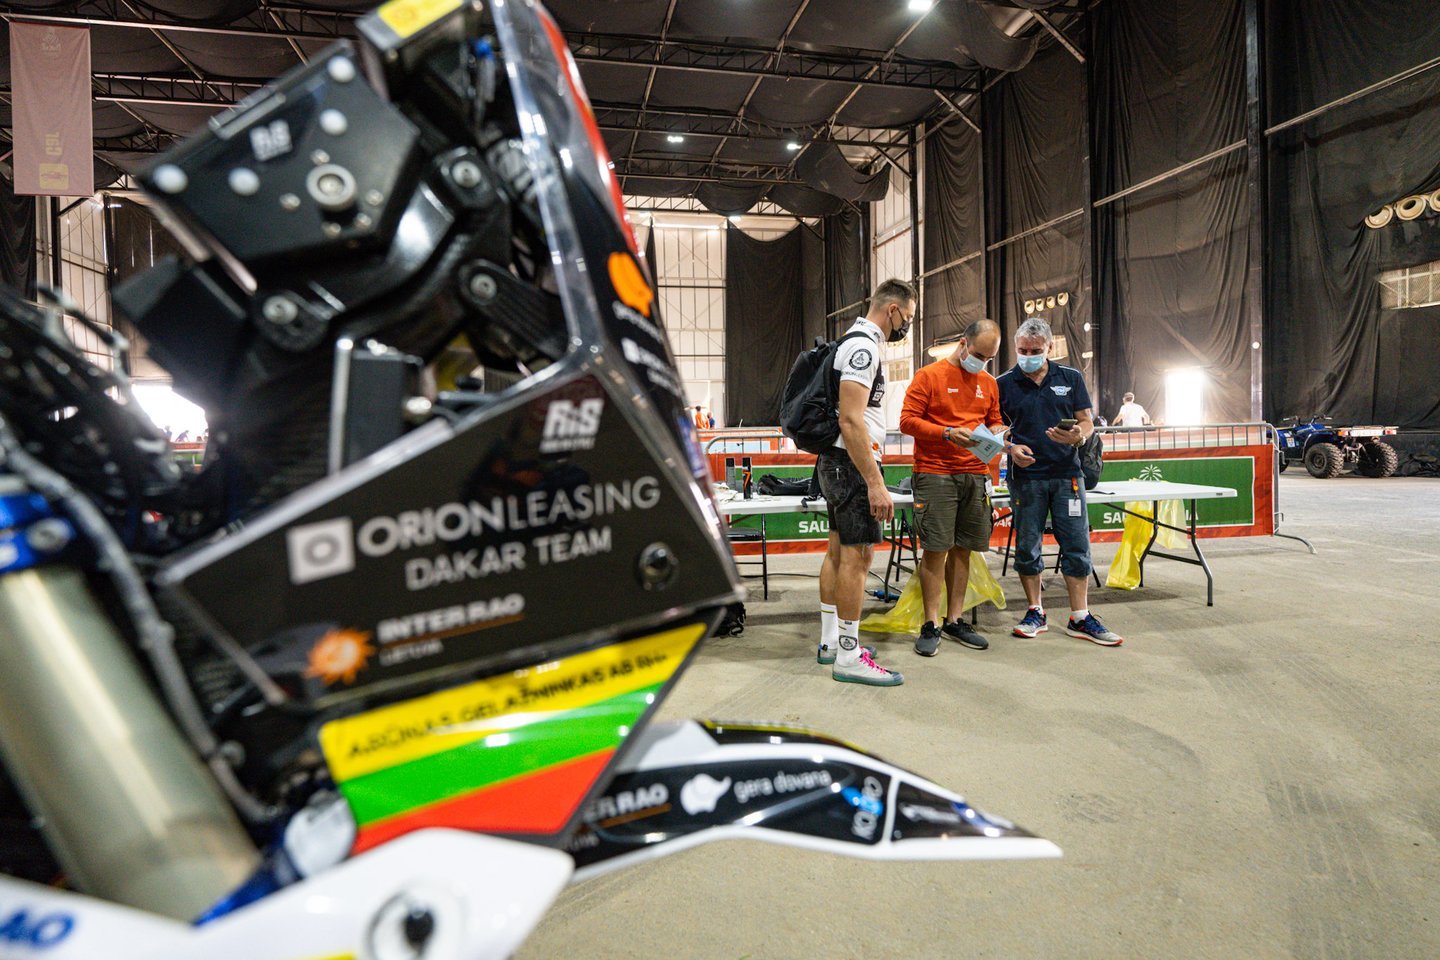 Orion Dakar Team